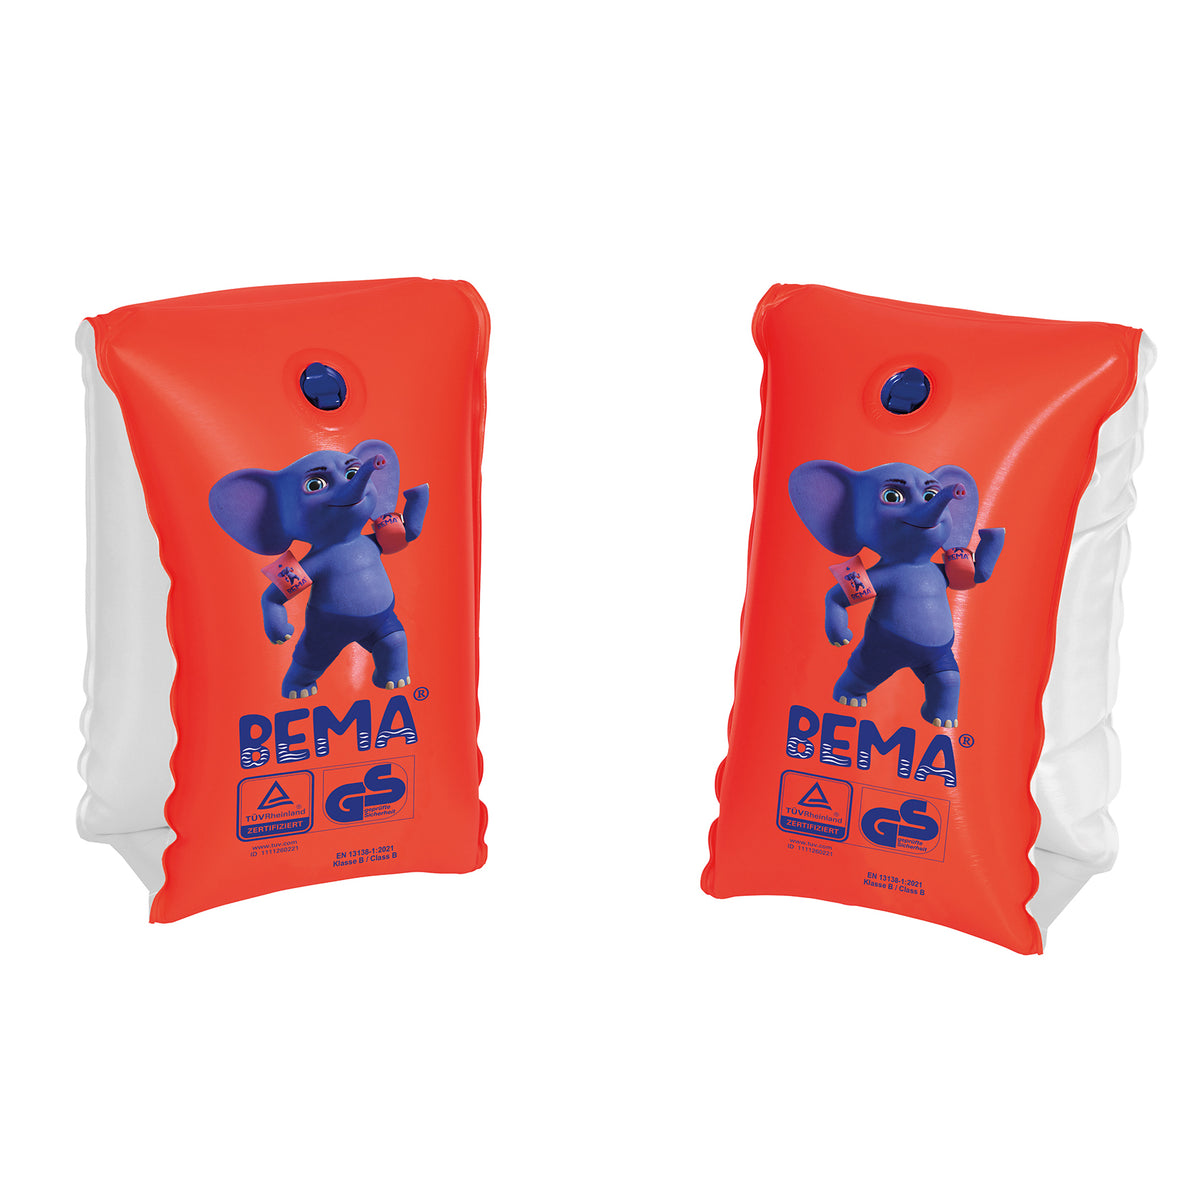 Happy People BEMA® Schwimmflügel für Kinder von 0-1 Jahren, orange, Gr. 00